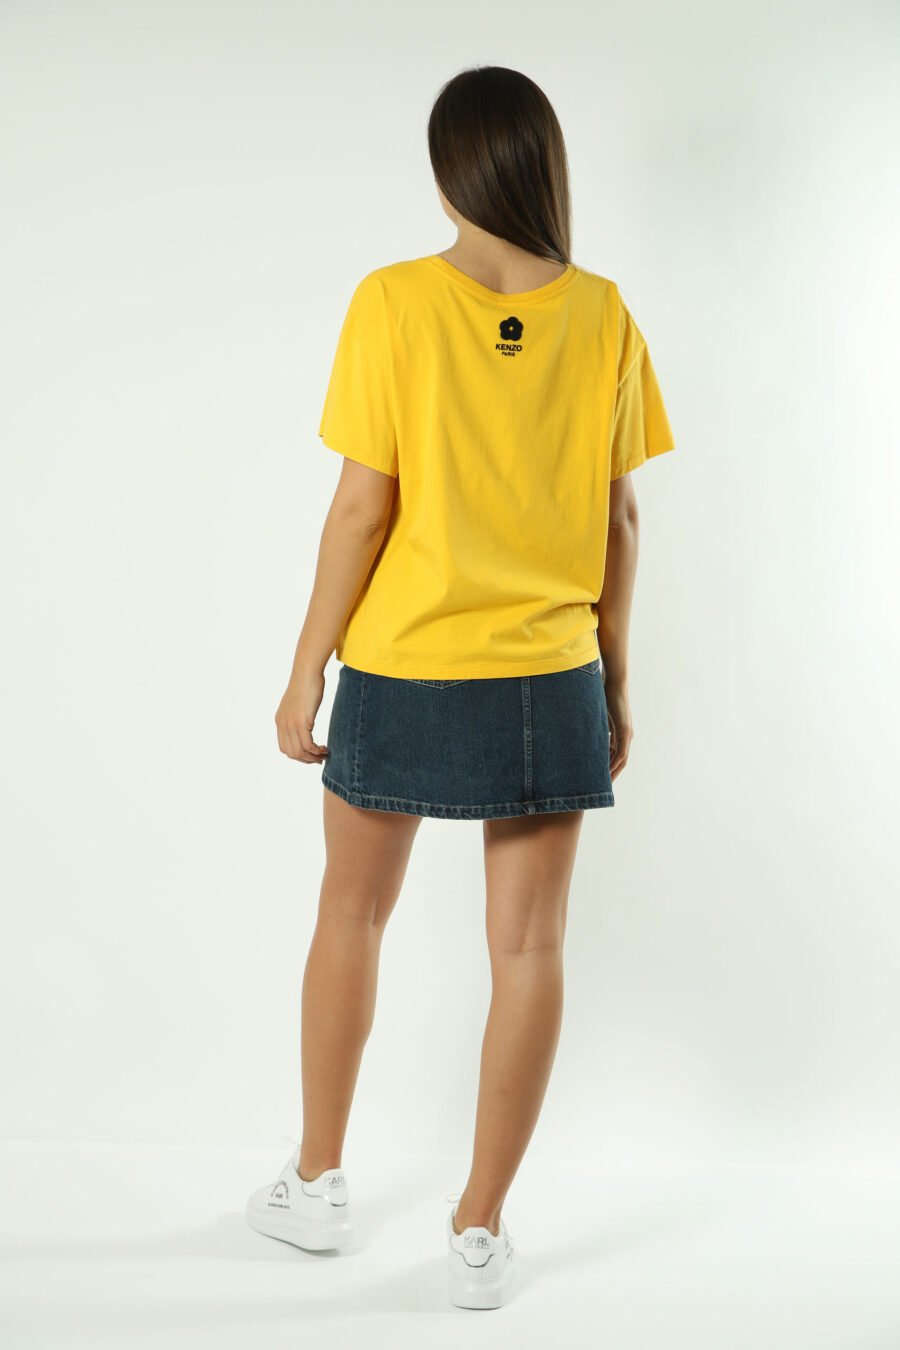 Camiseta amarilla con maxilogo elefante - Photos 1314